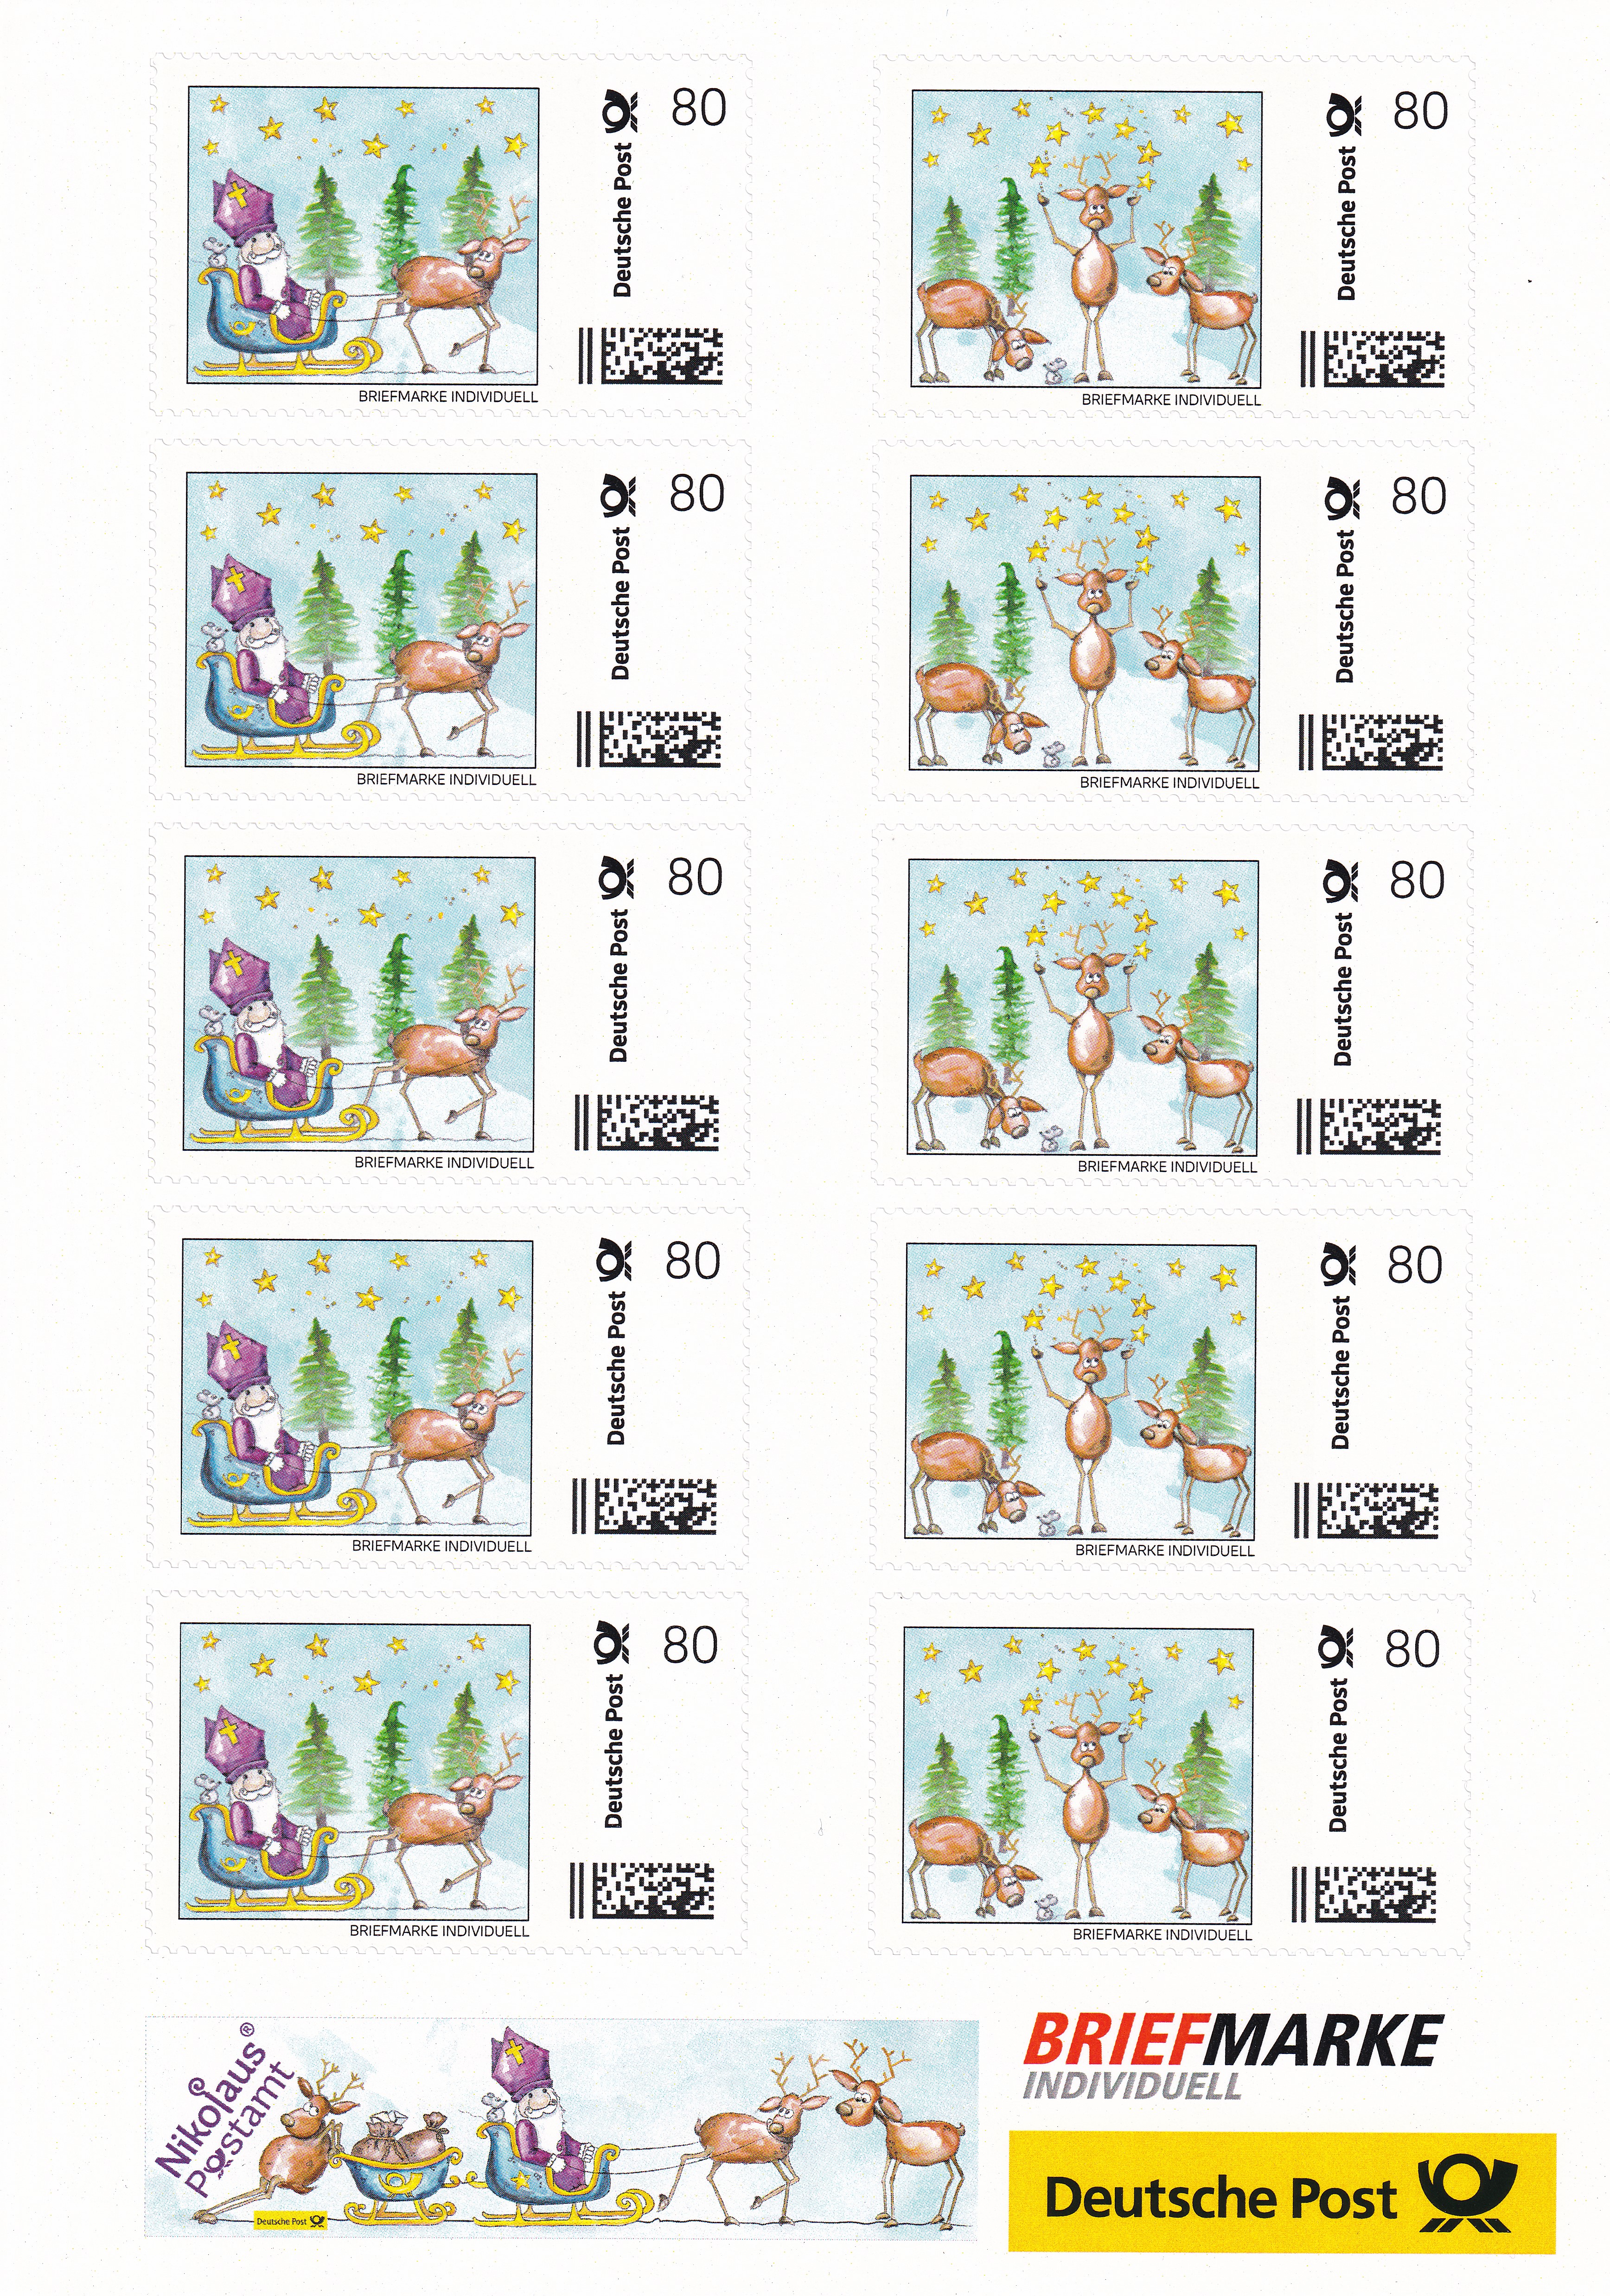 10 Nikolaus Briefmarken Individuell - Nikolausschlitten + Weihnachtsrehe - auf DIN A5 Schmuckbogen